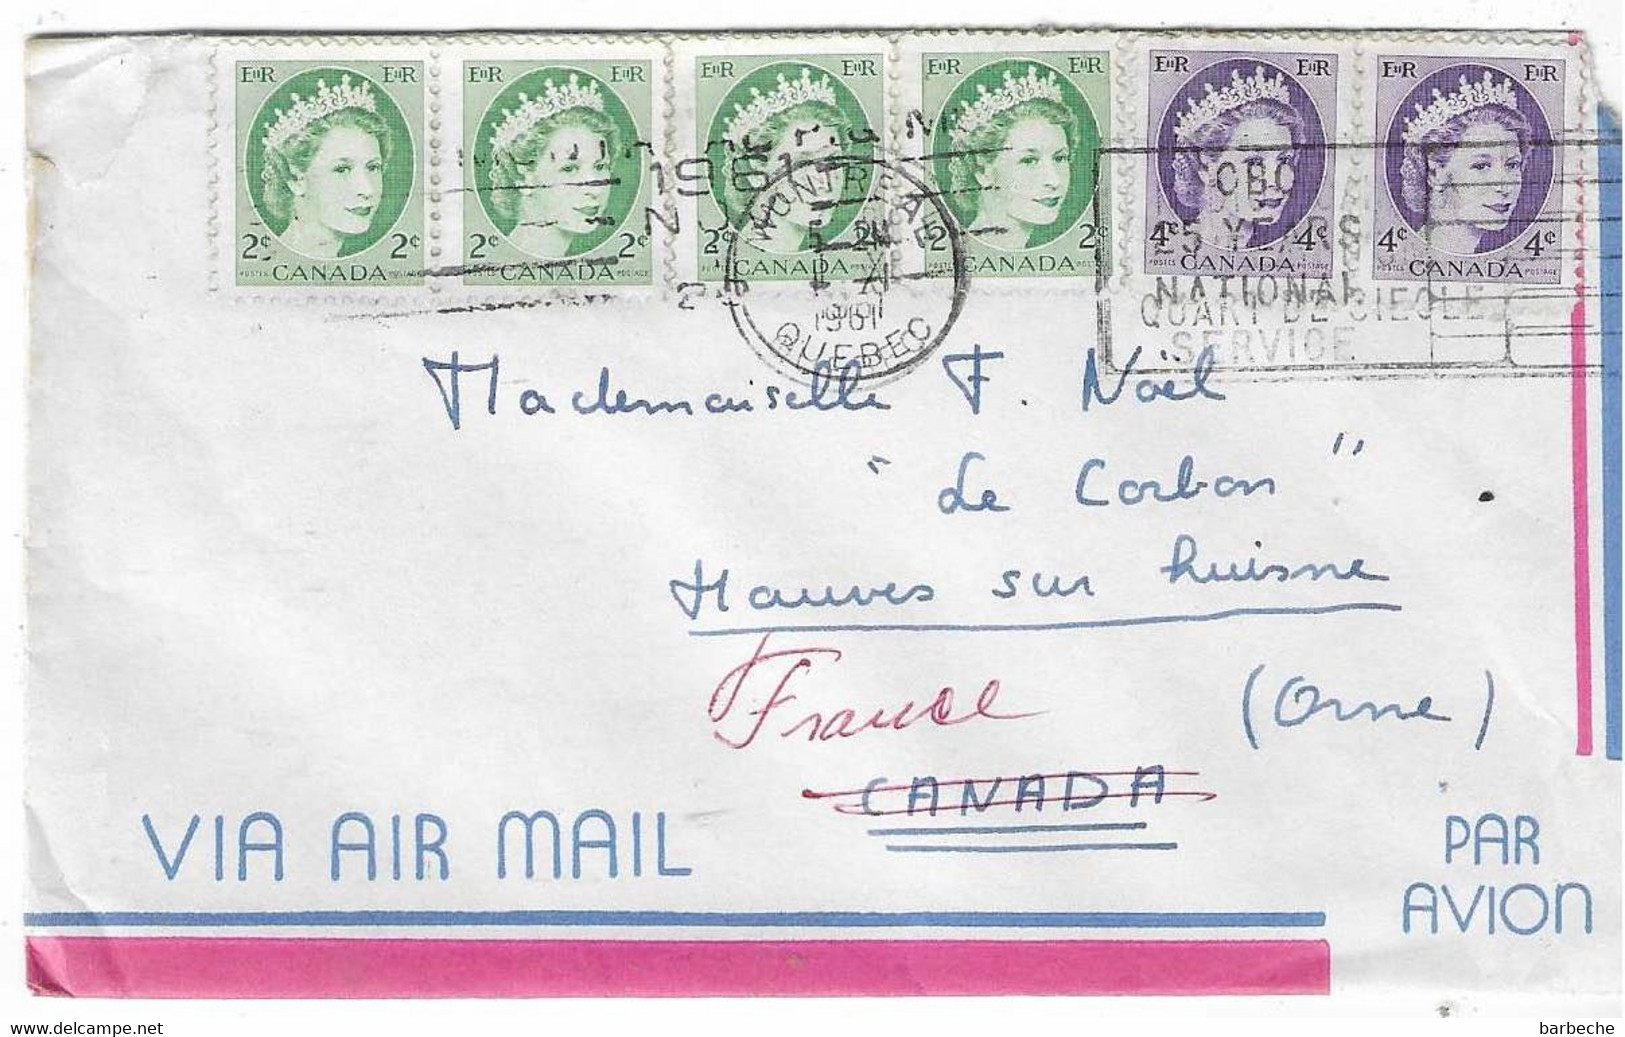 CANADA VIA AIR MAIL QUEBEC - Airmail